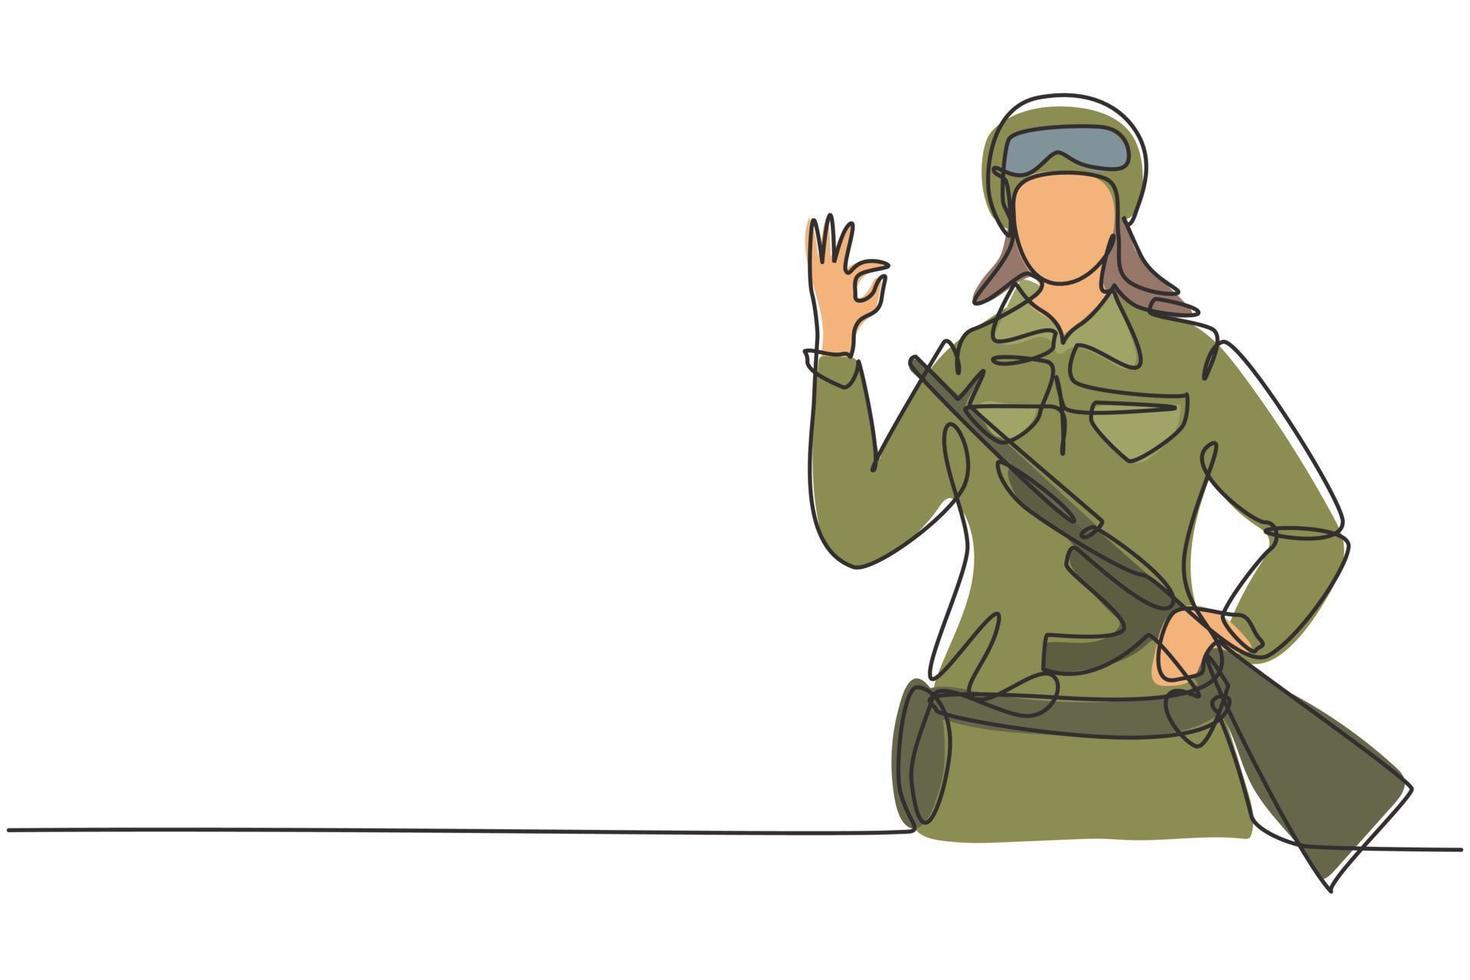 enda kontinuerlig linje ritning kvinnliga soldater med vapen, uniform, gest okej är redo att försvara landet på slagfältet mot fienden. dynamisk en linje rita grafisk design vektor illustration